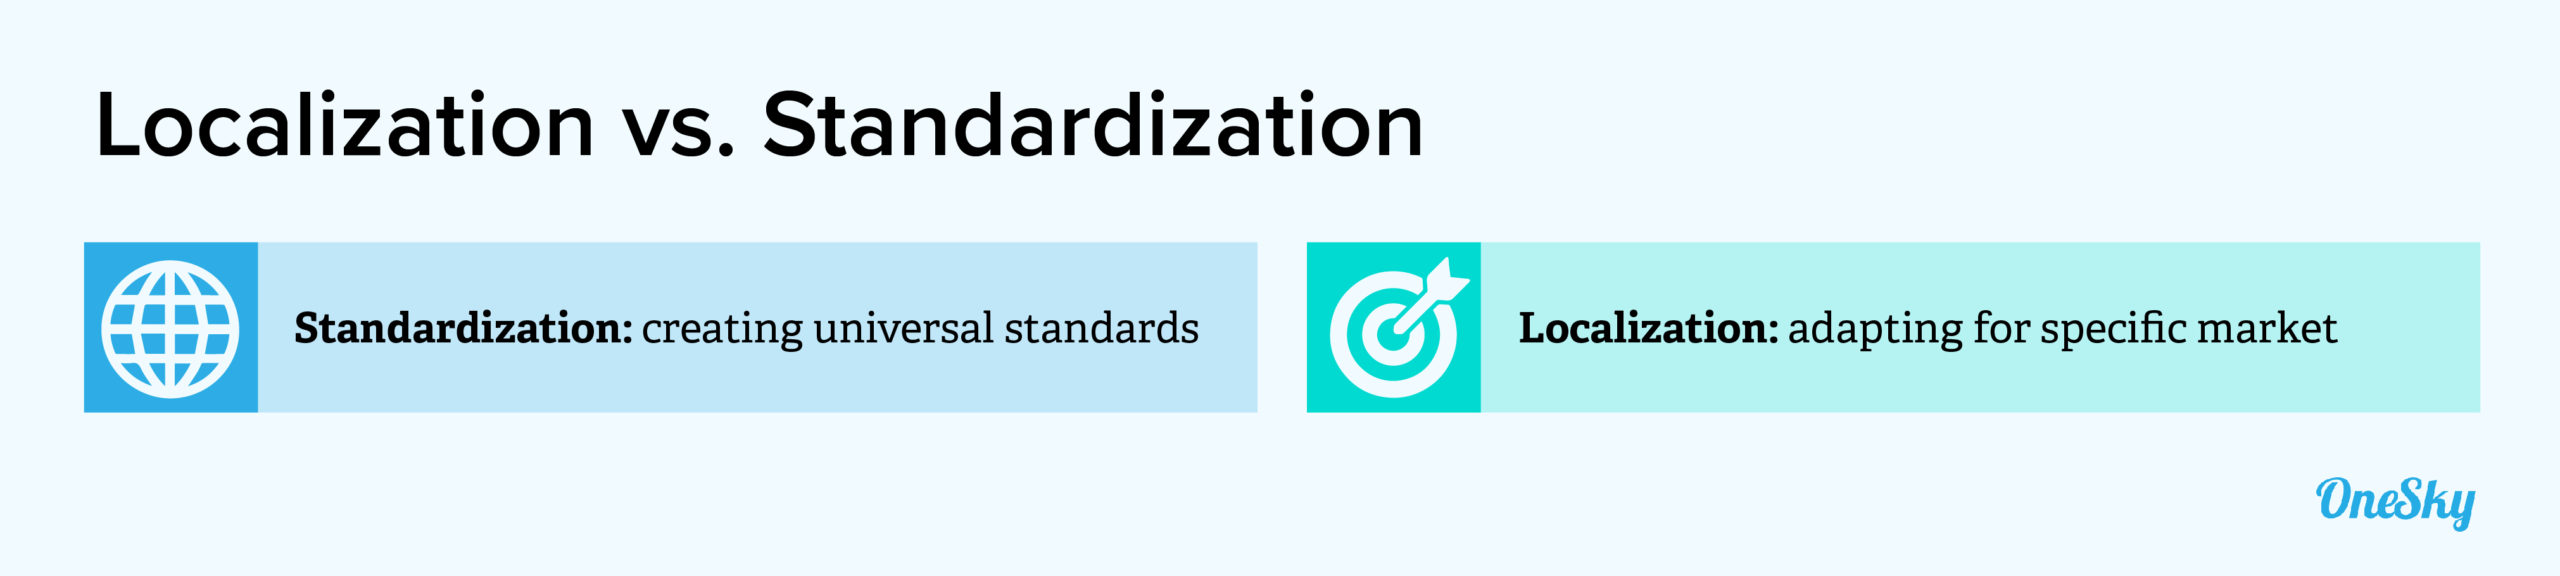 localization vs standardization